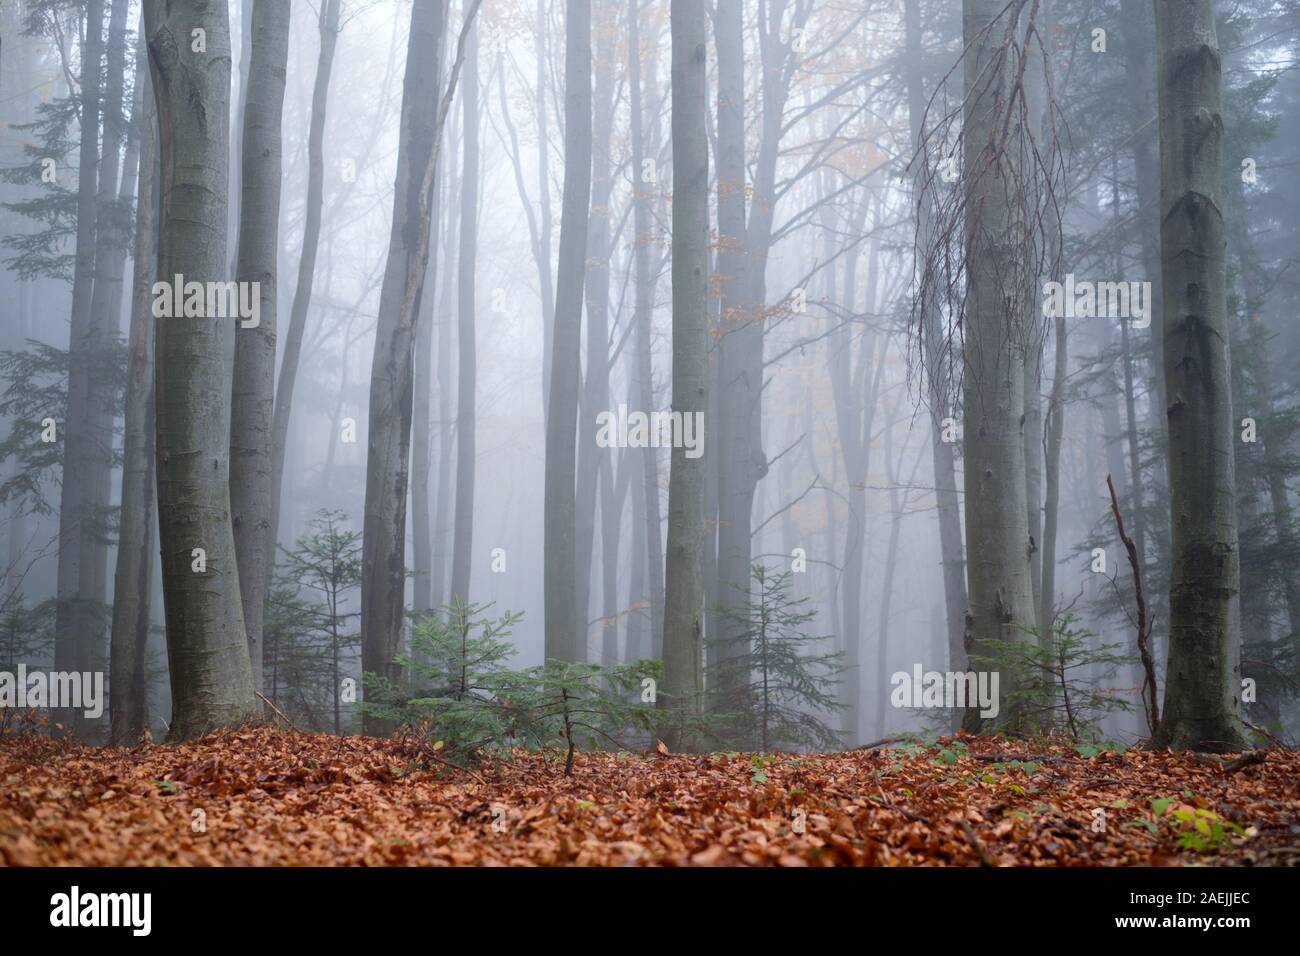 Oscuro misterioso bosque de hayas en la niebla. Mañana de otoño en el brumoso bosque. Mágica atmósfera neblinosa. Fotografía paisajística Foto de stock